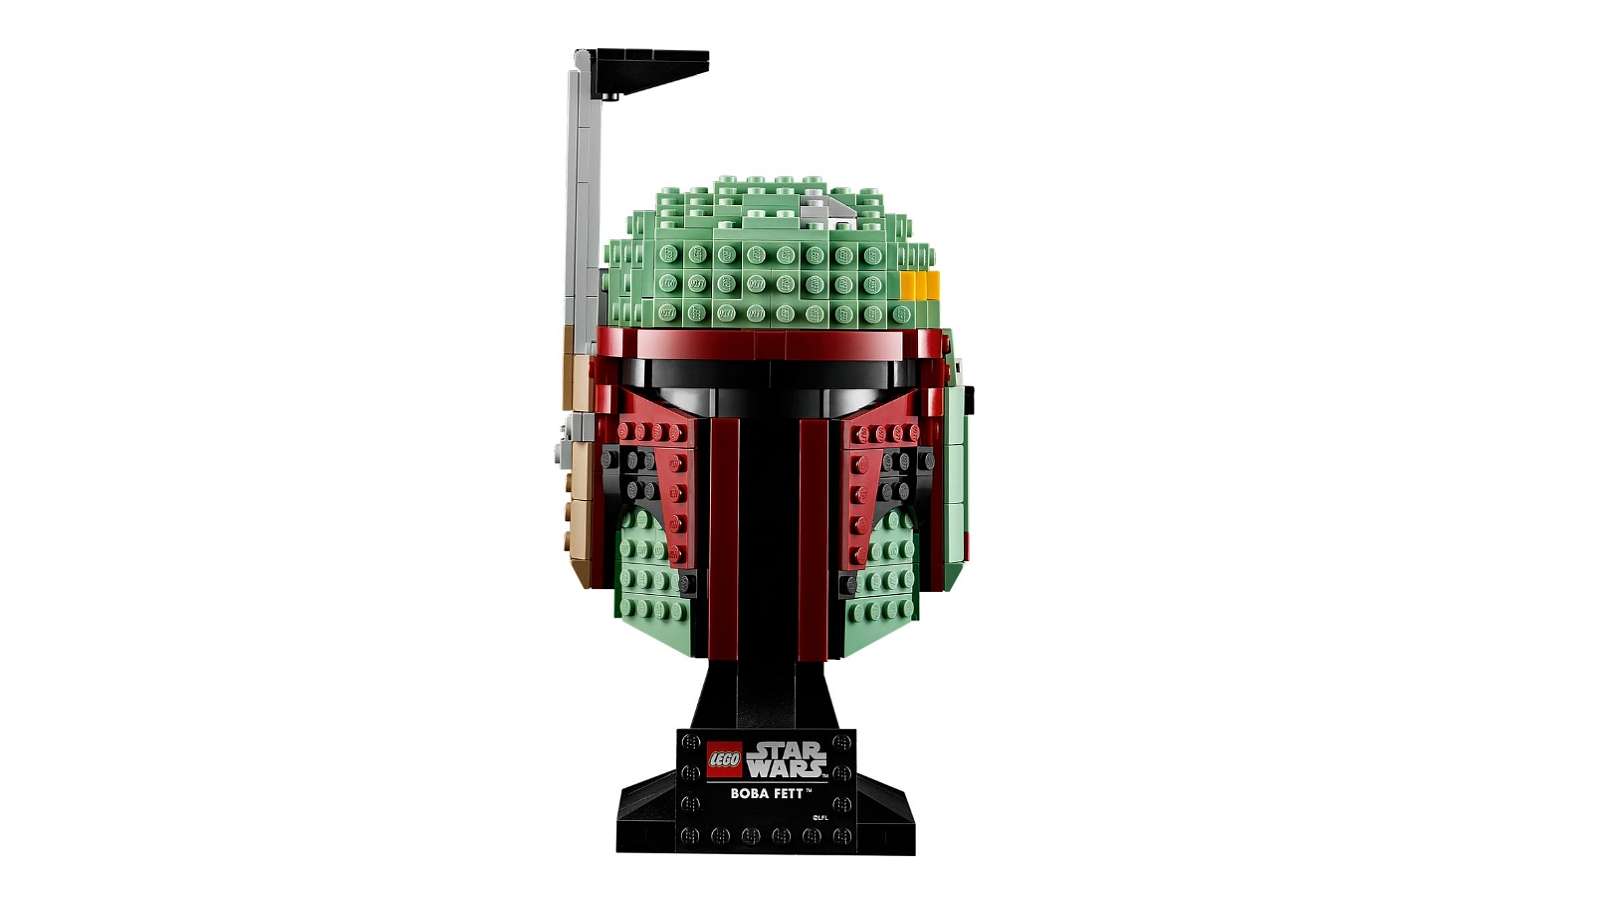 Soutěž - Vyhrajte LEGO Star Wars sběratelské helmy